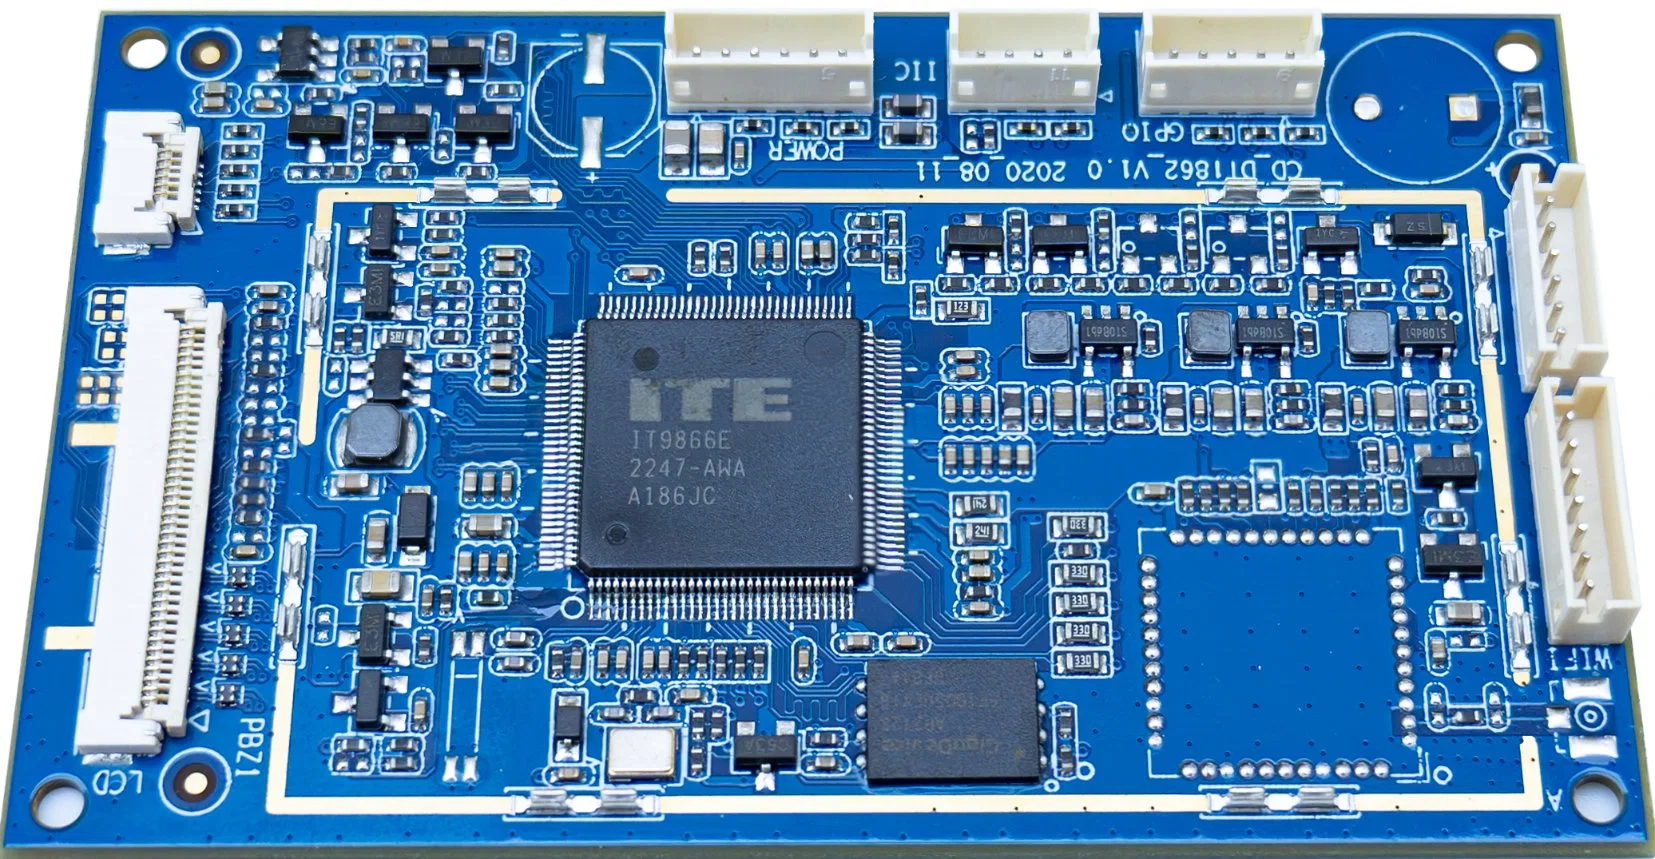 PCBA personnalisée de circuit de carte mère professionnelle intégrée Mtk8168 (Mediatek Inc.) prenant en charge Android WiFi et Bluetooth.